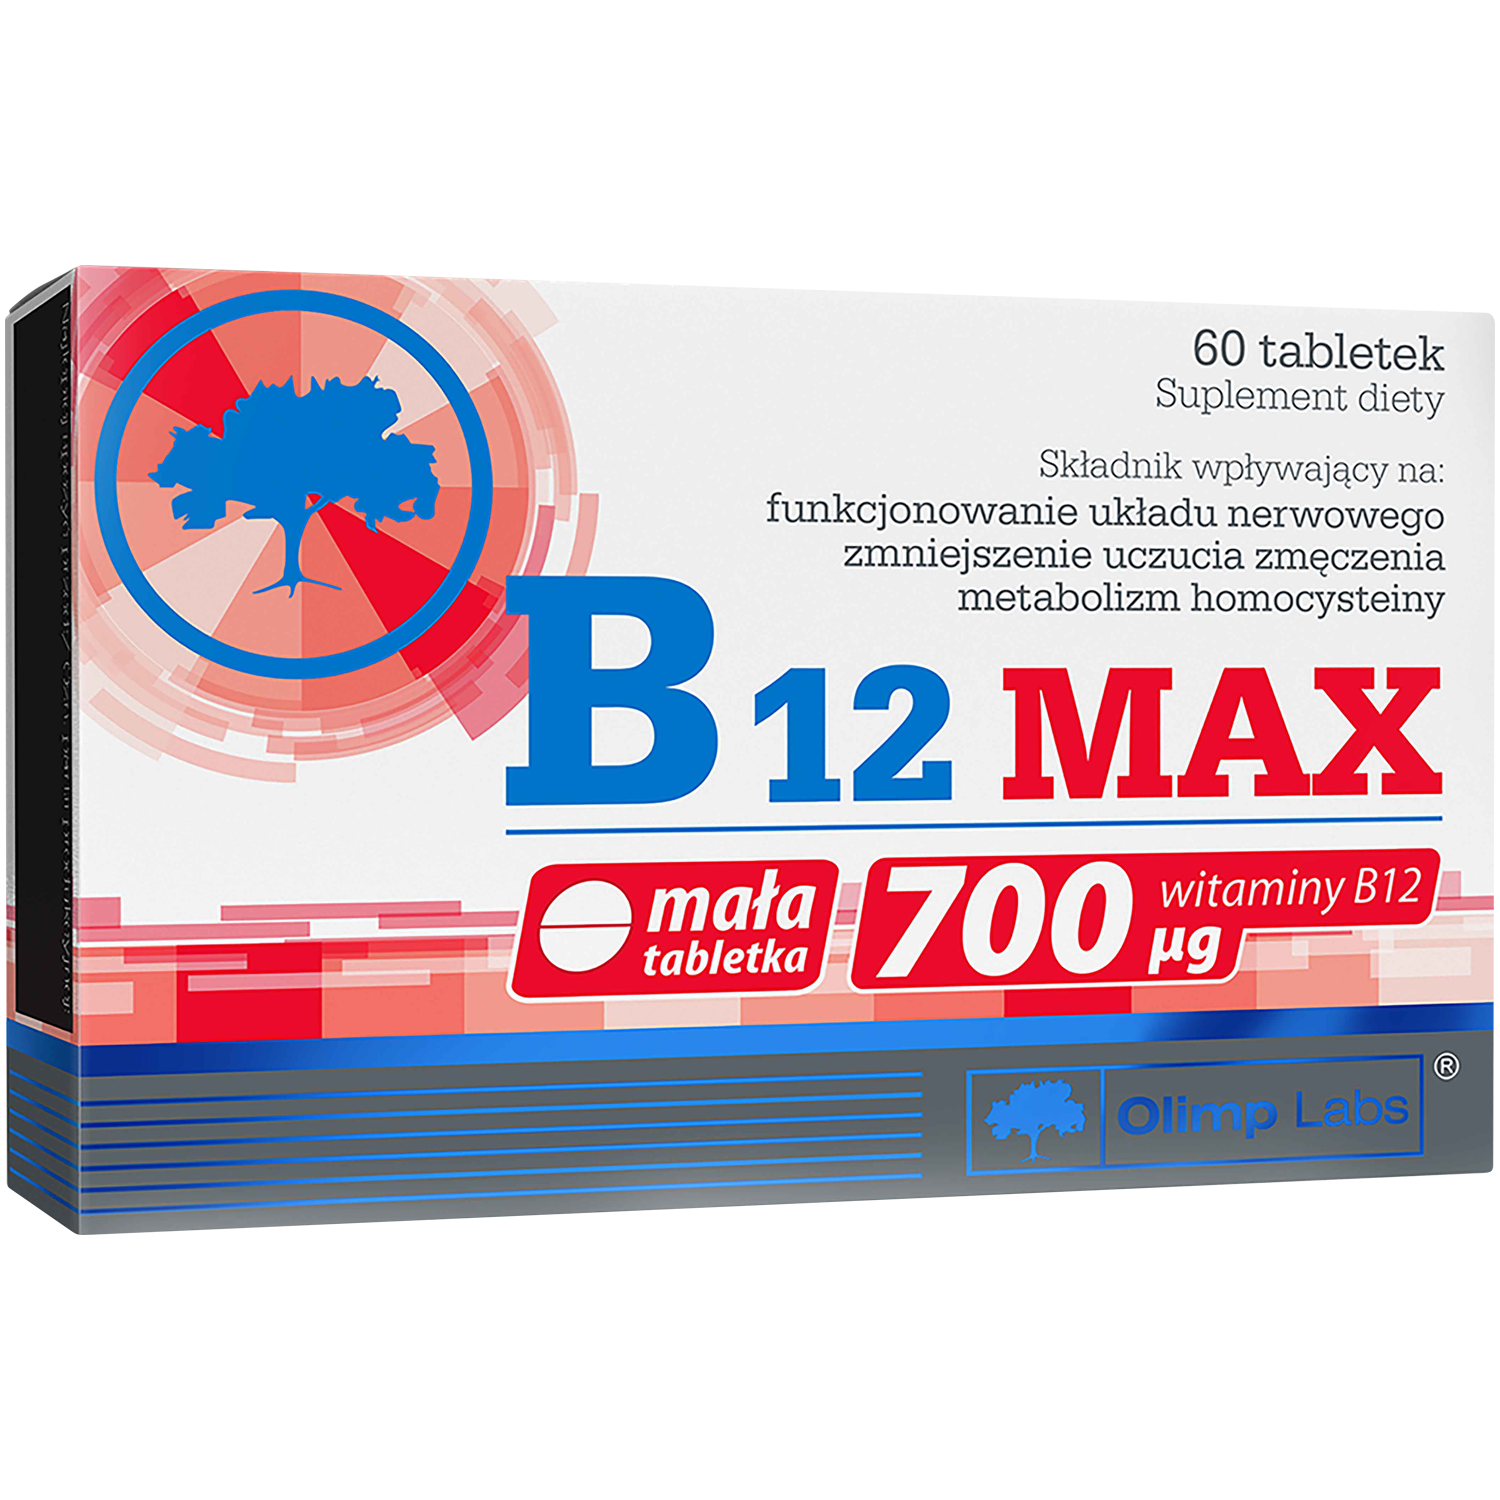 nutrihealth burak czerwony биологически активная добавка 60 таблеток 1 упаковка Olimp B12 Max биологически активная добавка, 60 таблеток/1 упаковка